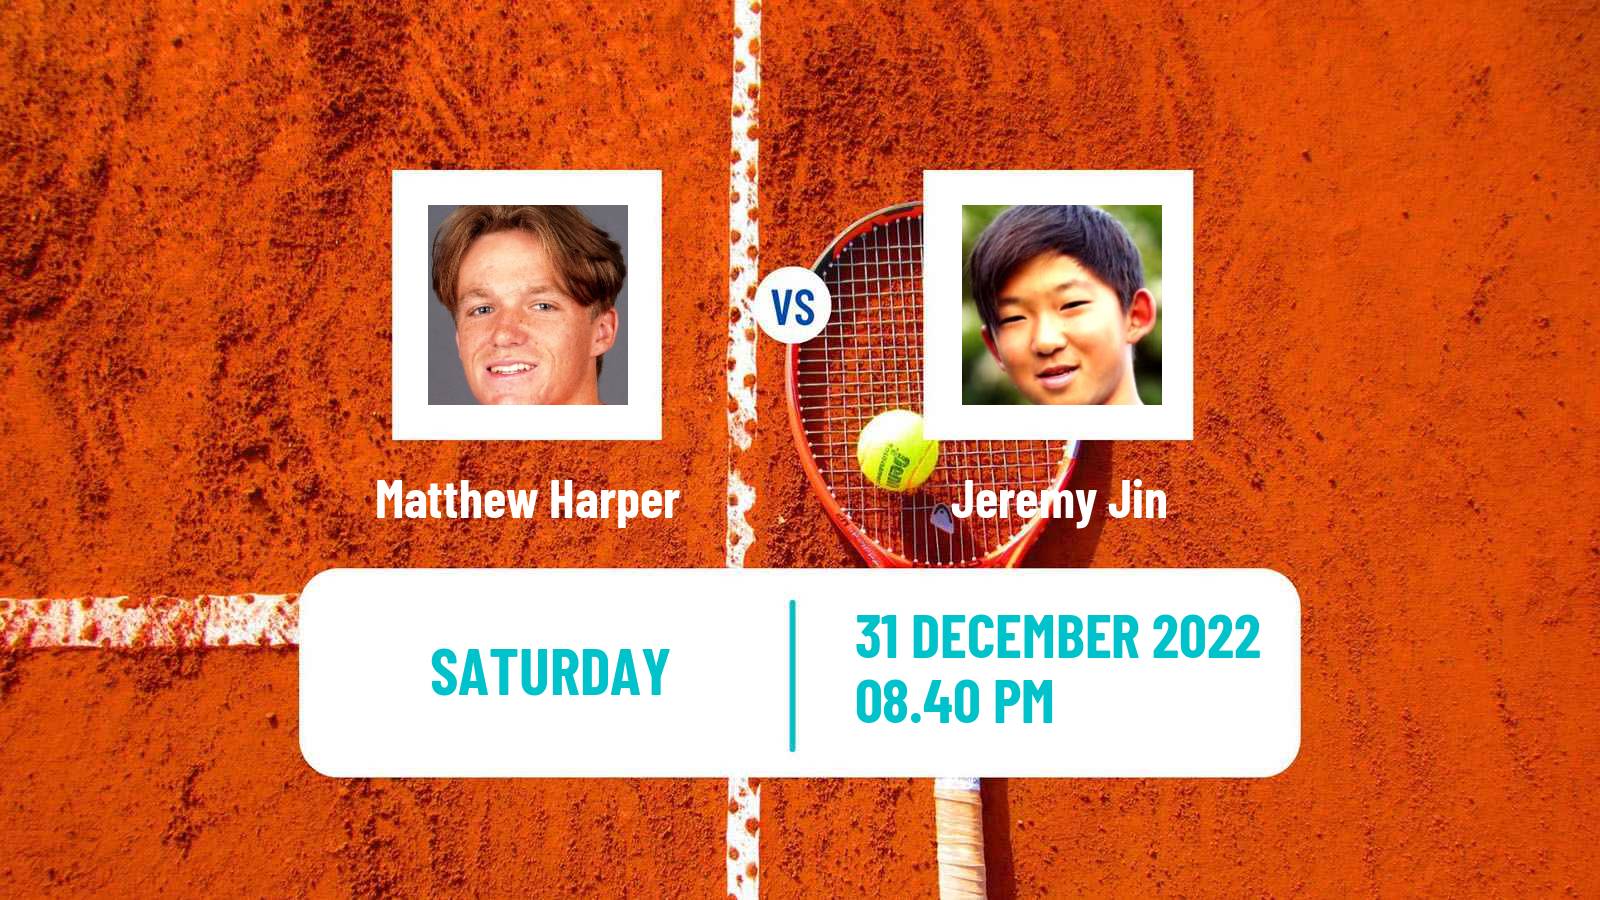 Tennis ATP Challenger Matthew Harper - Jeremy Jin